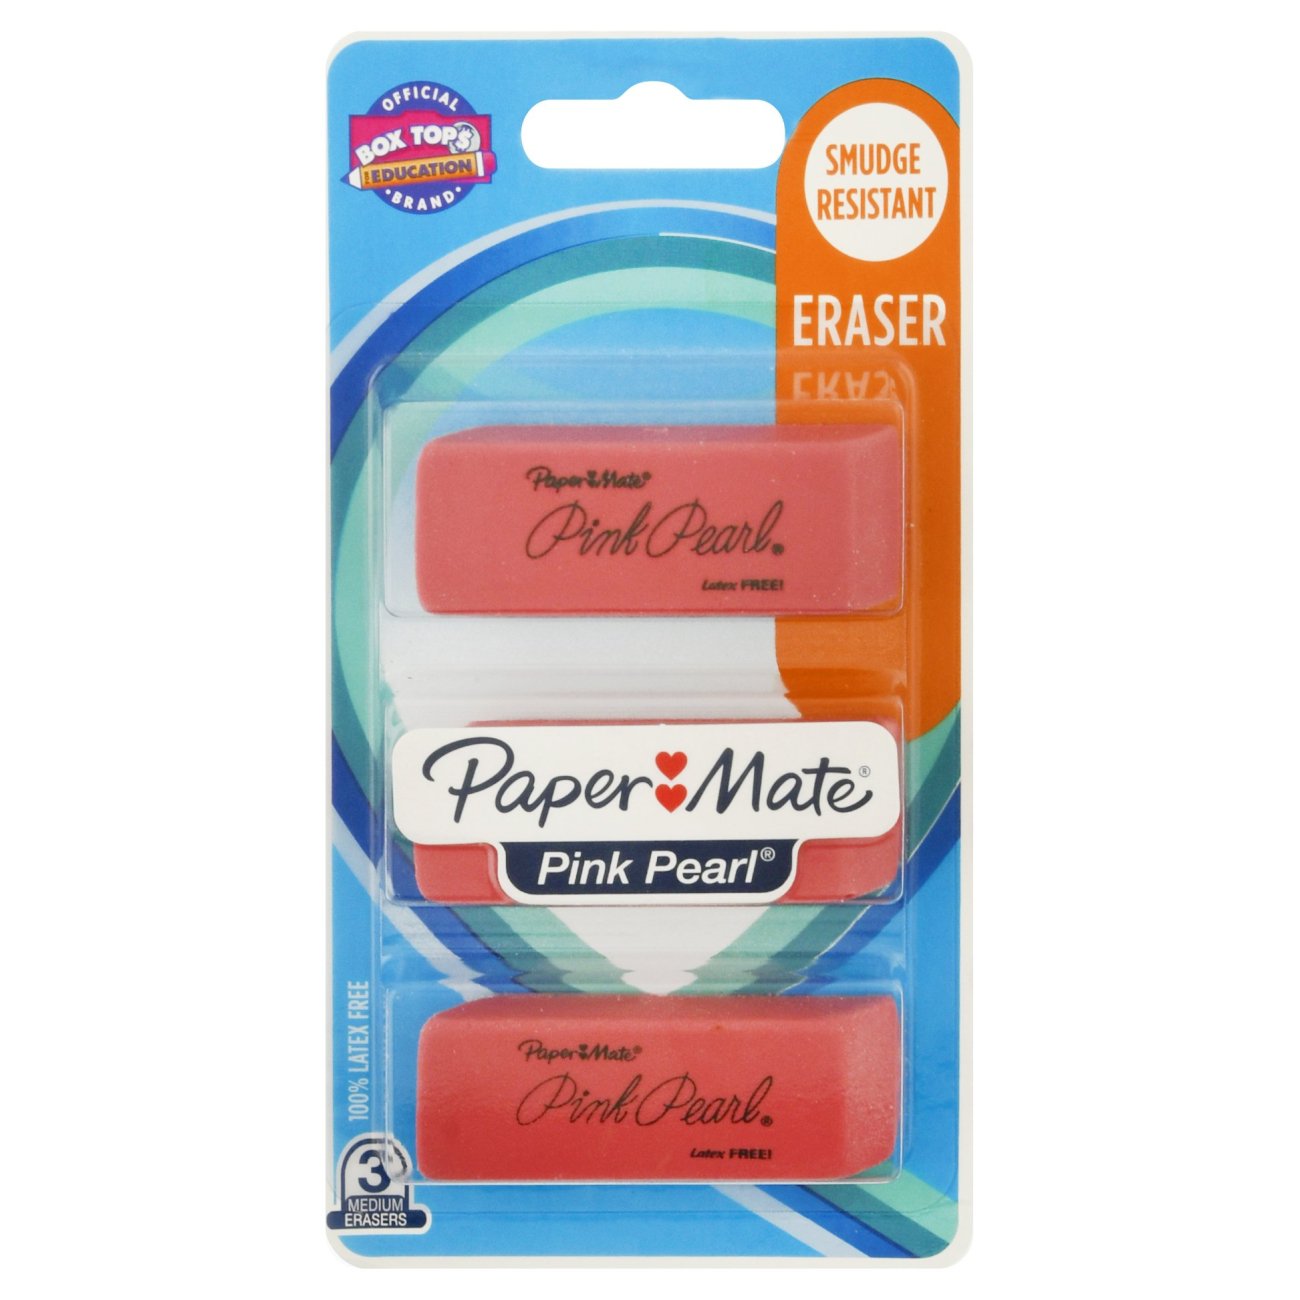 100% Latex Free Pink Pearl Eraser Smudge Resistant Eraser Set 3 paper mate 